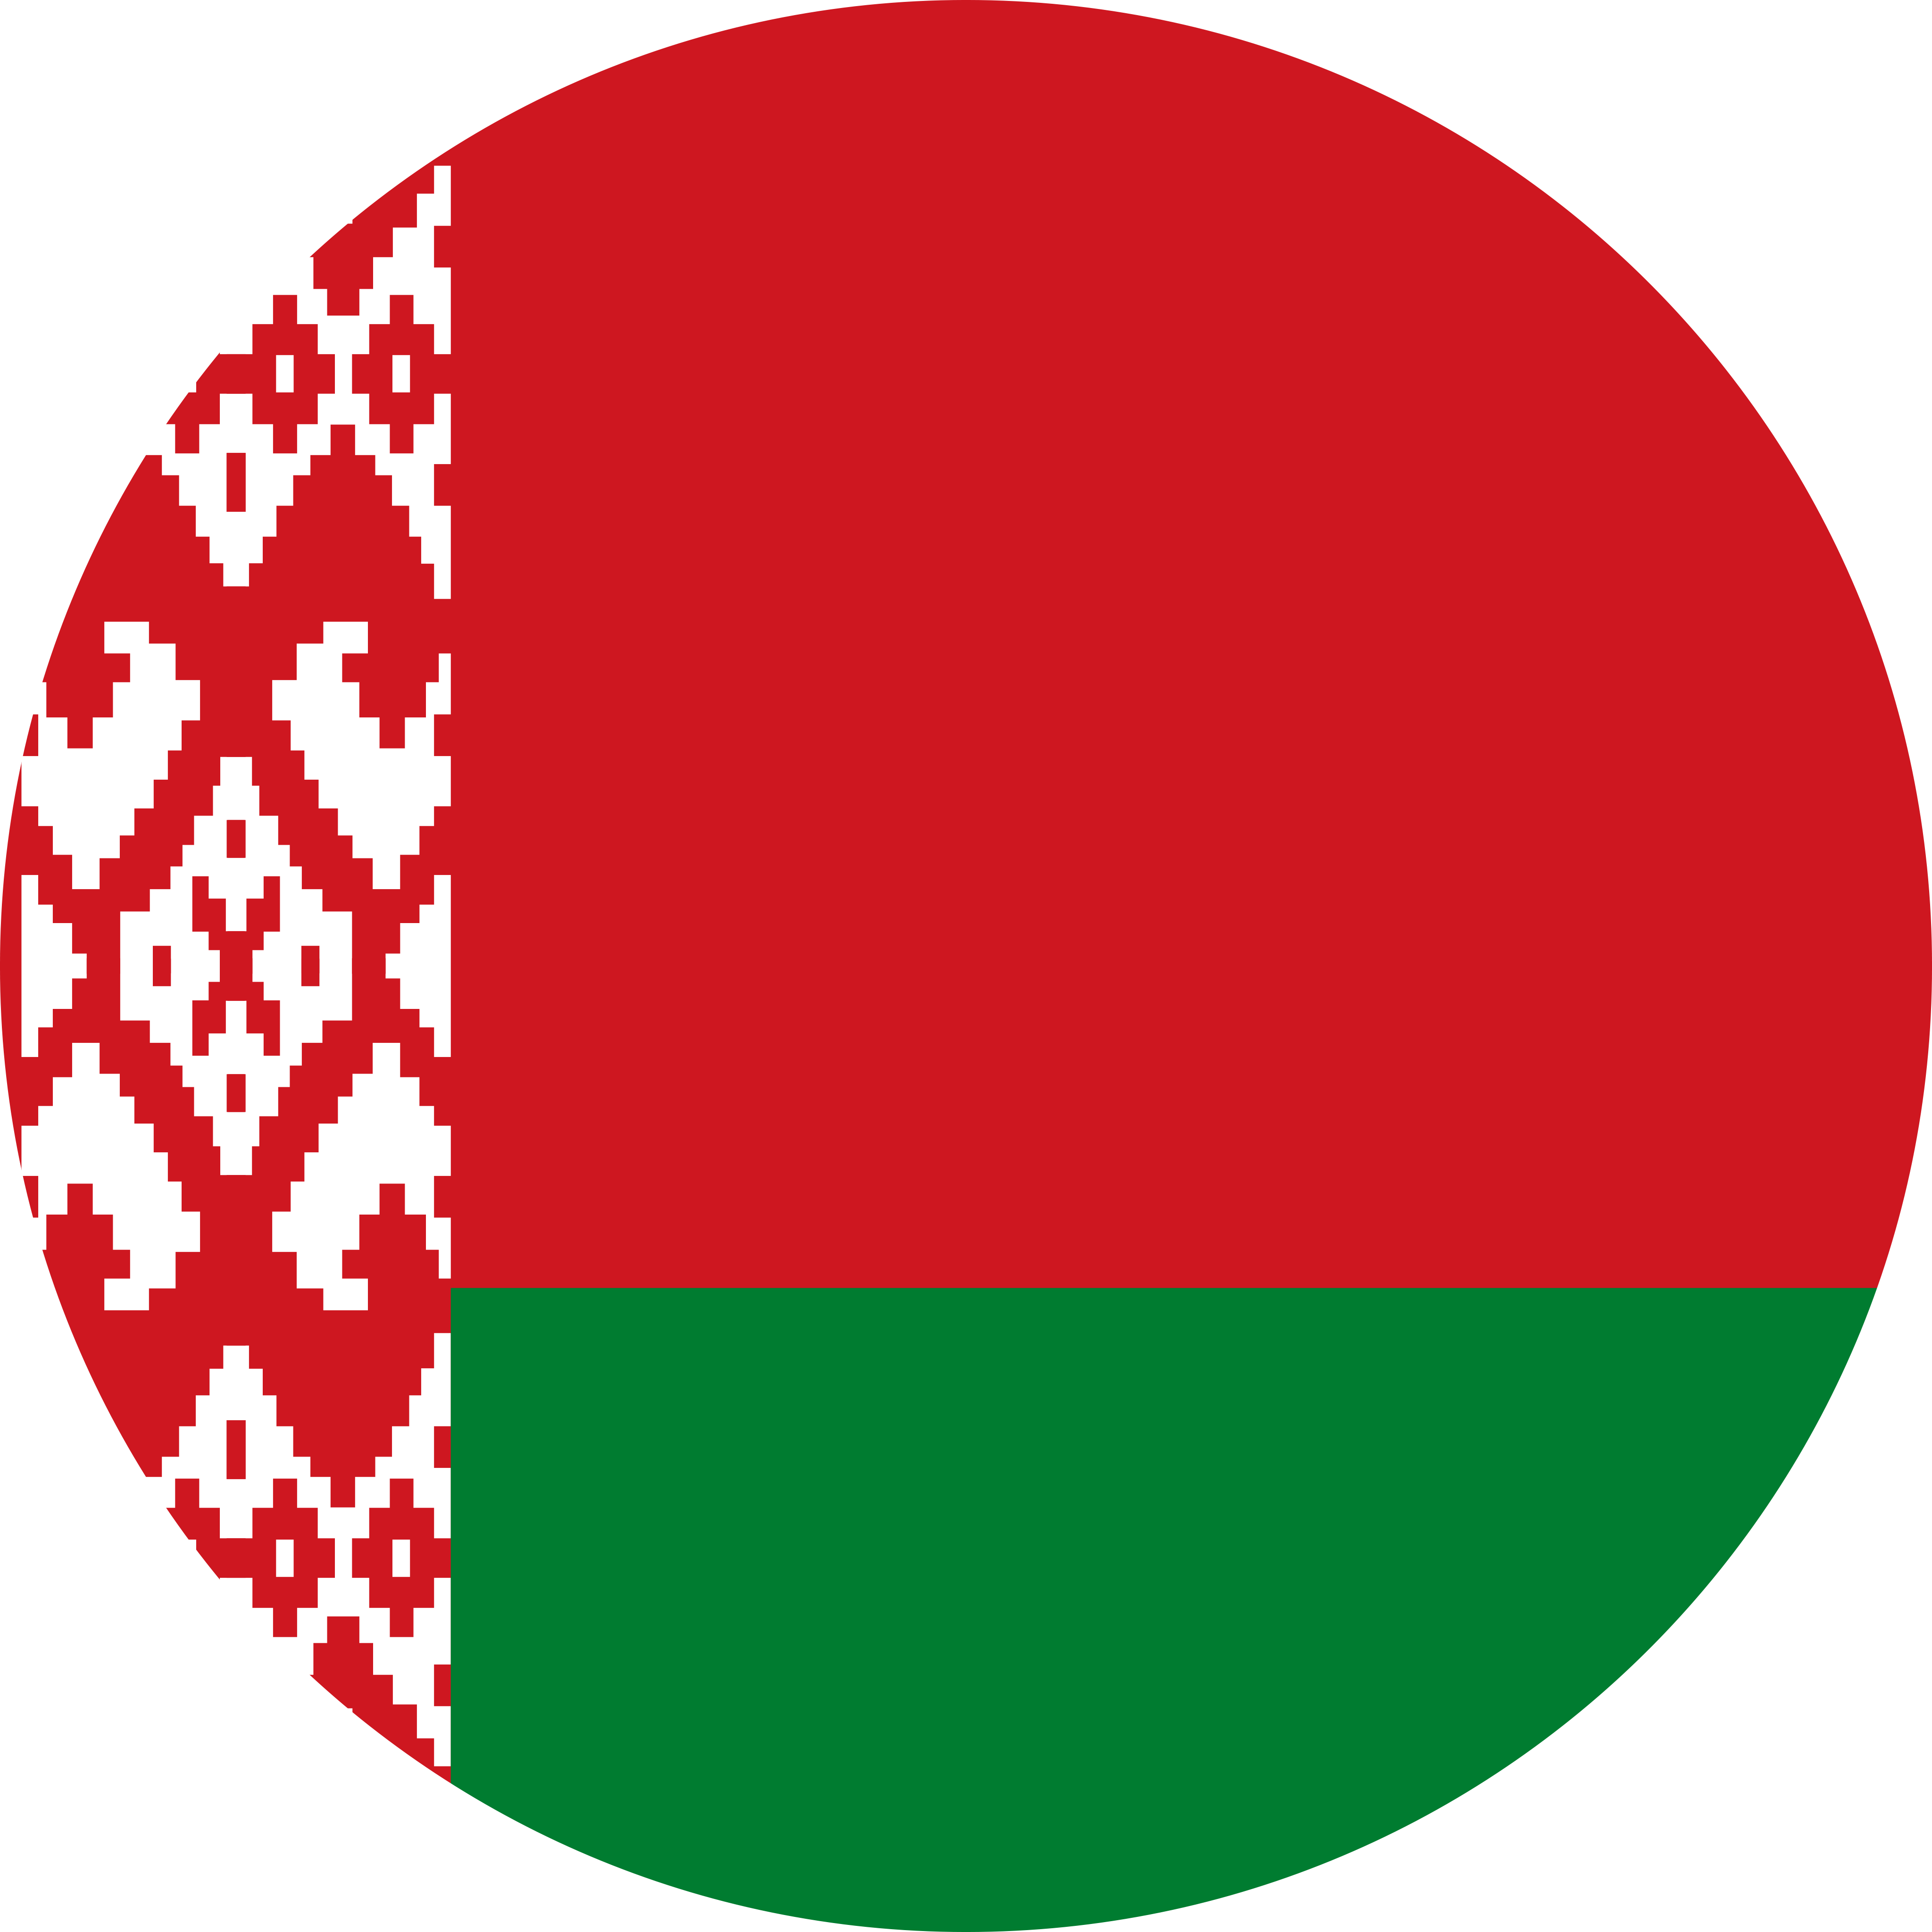 Belarus (W) U17